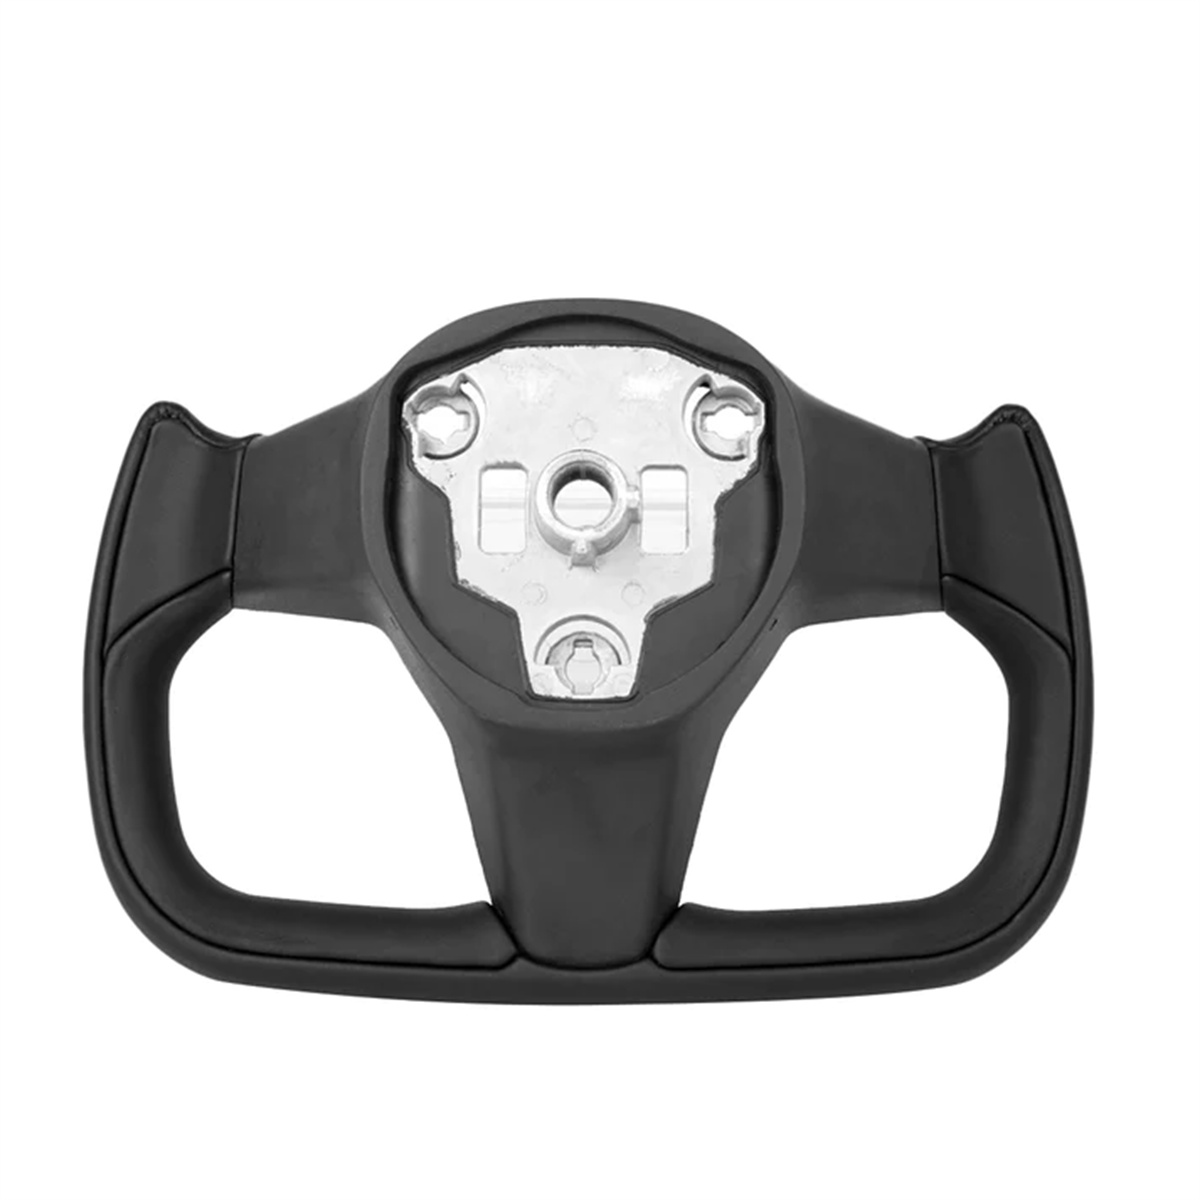 Black Leather Yoke Steering Wheel for Tesla Model 3 / Y